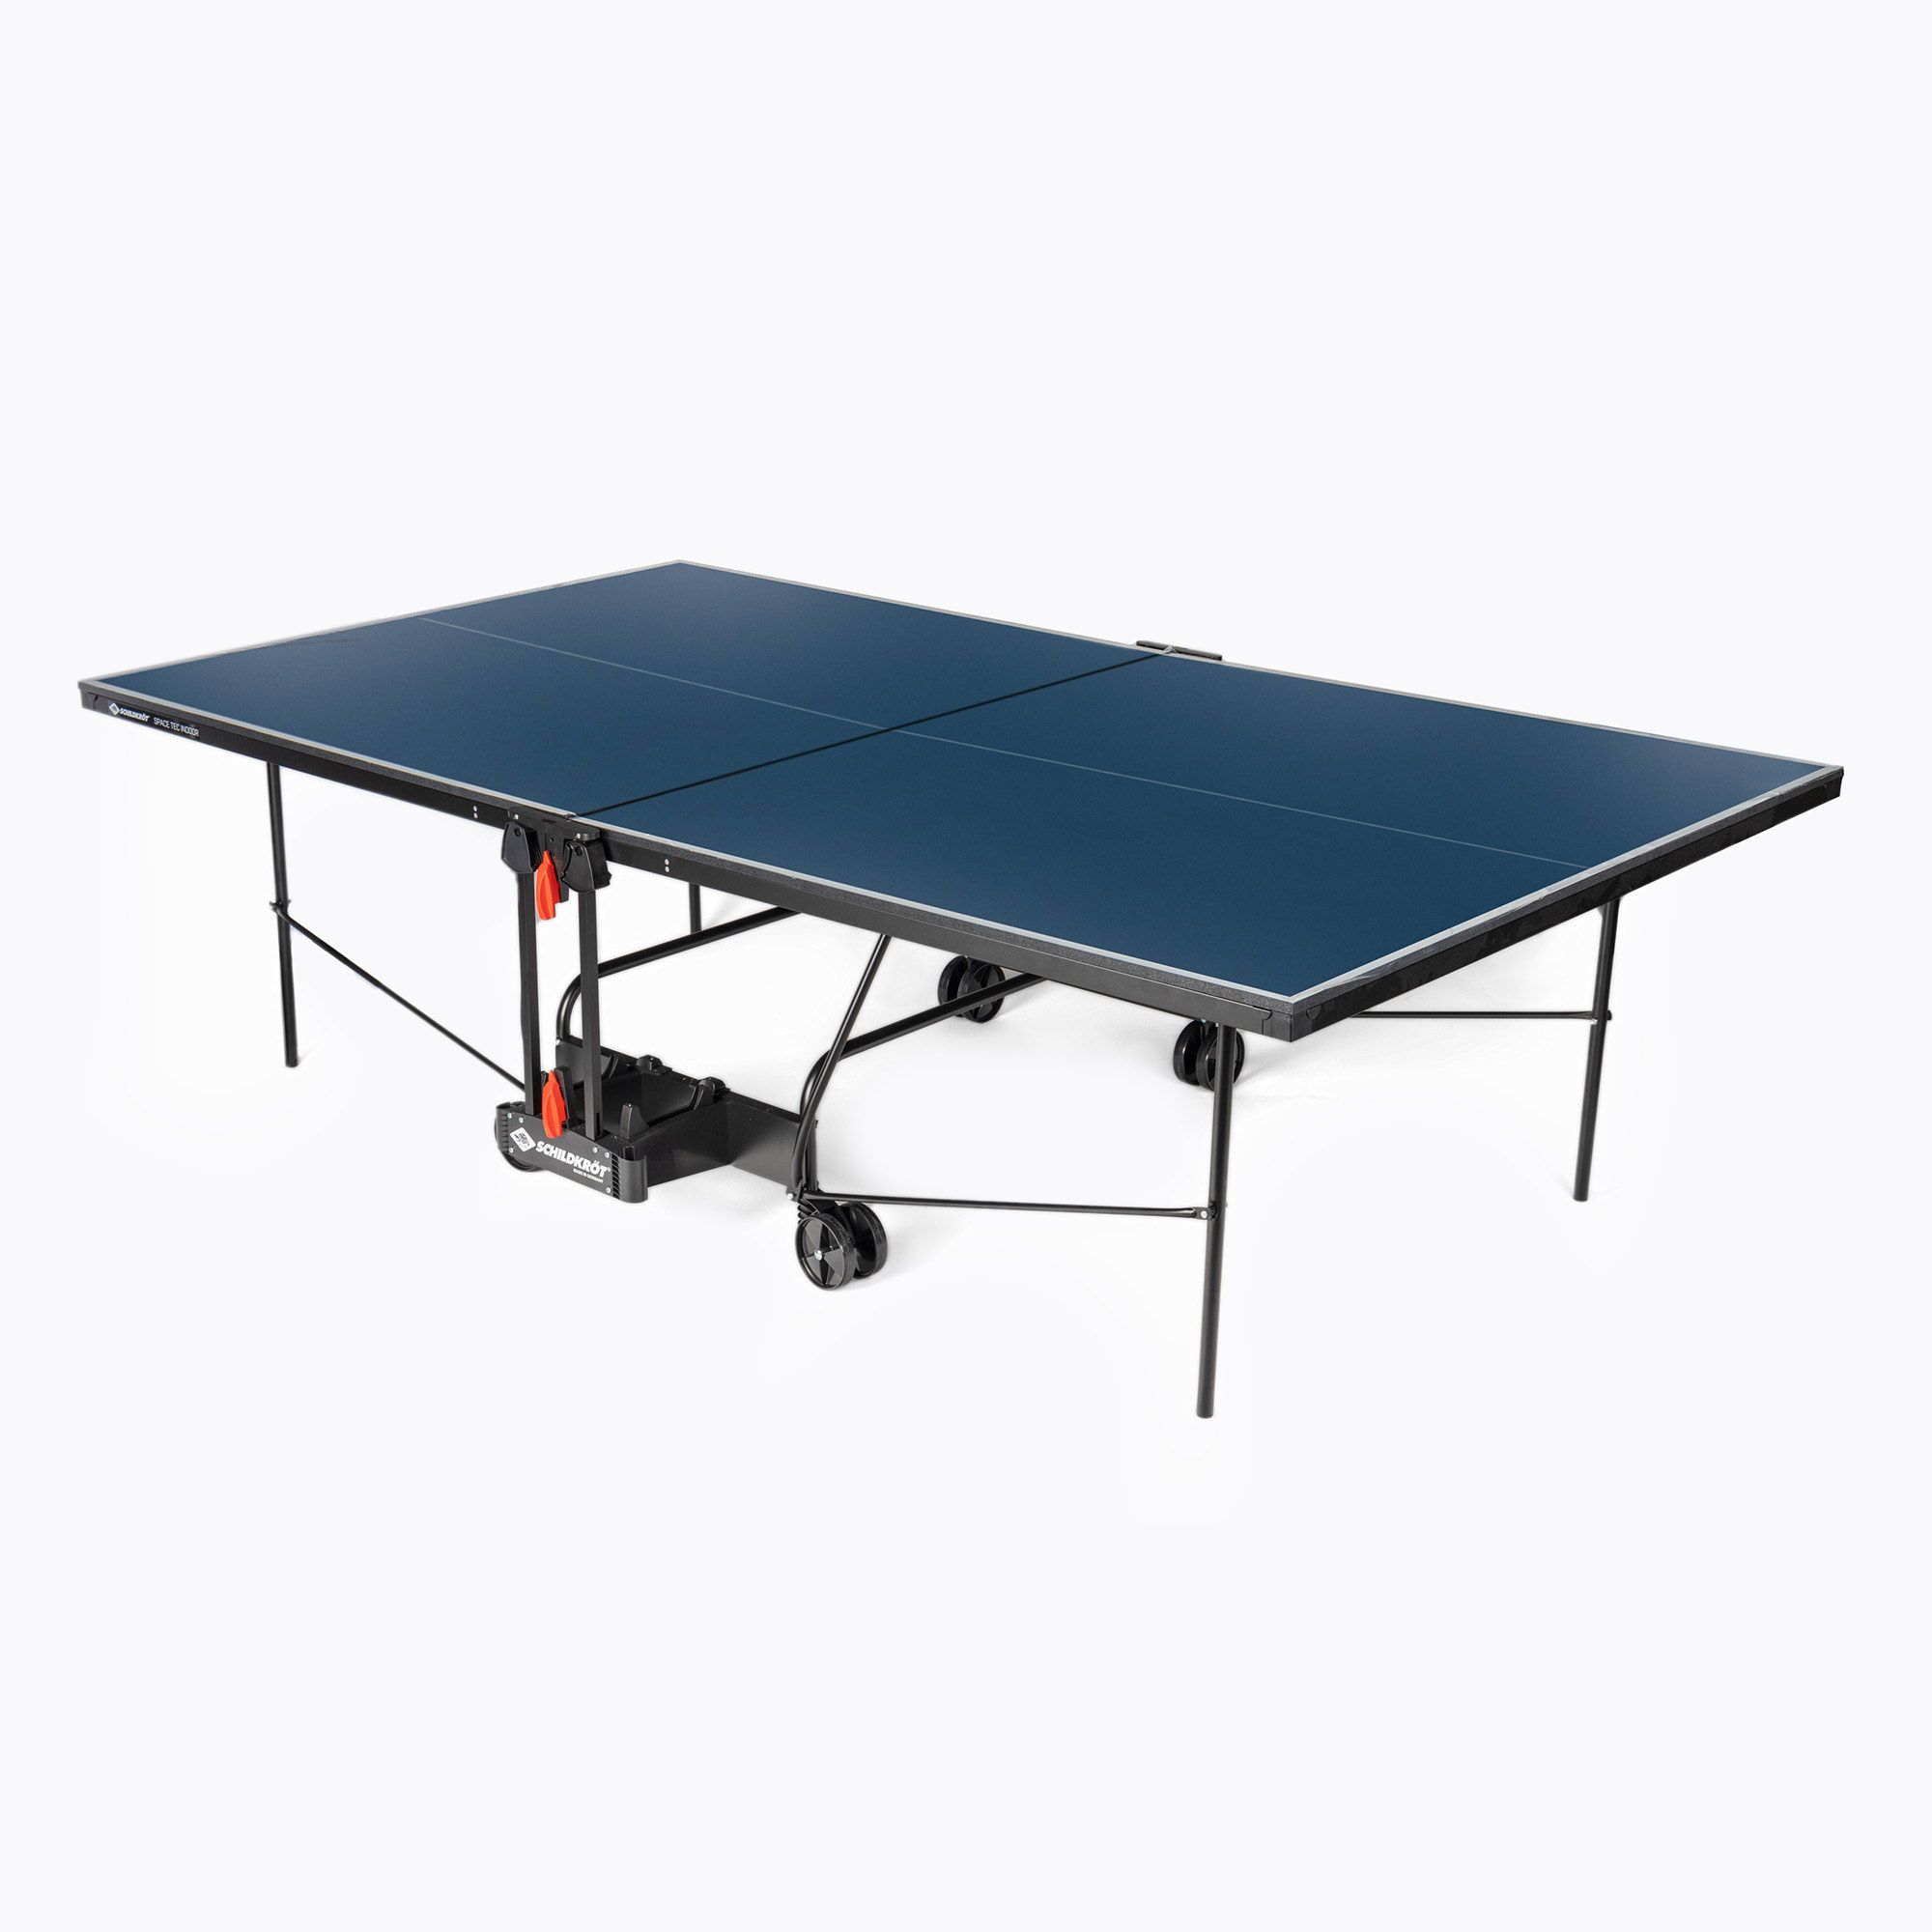 Schildkröt SpaceTec Indoor table tennis table blue 838546